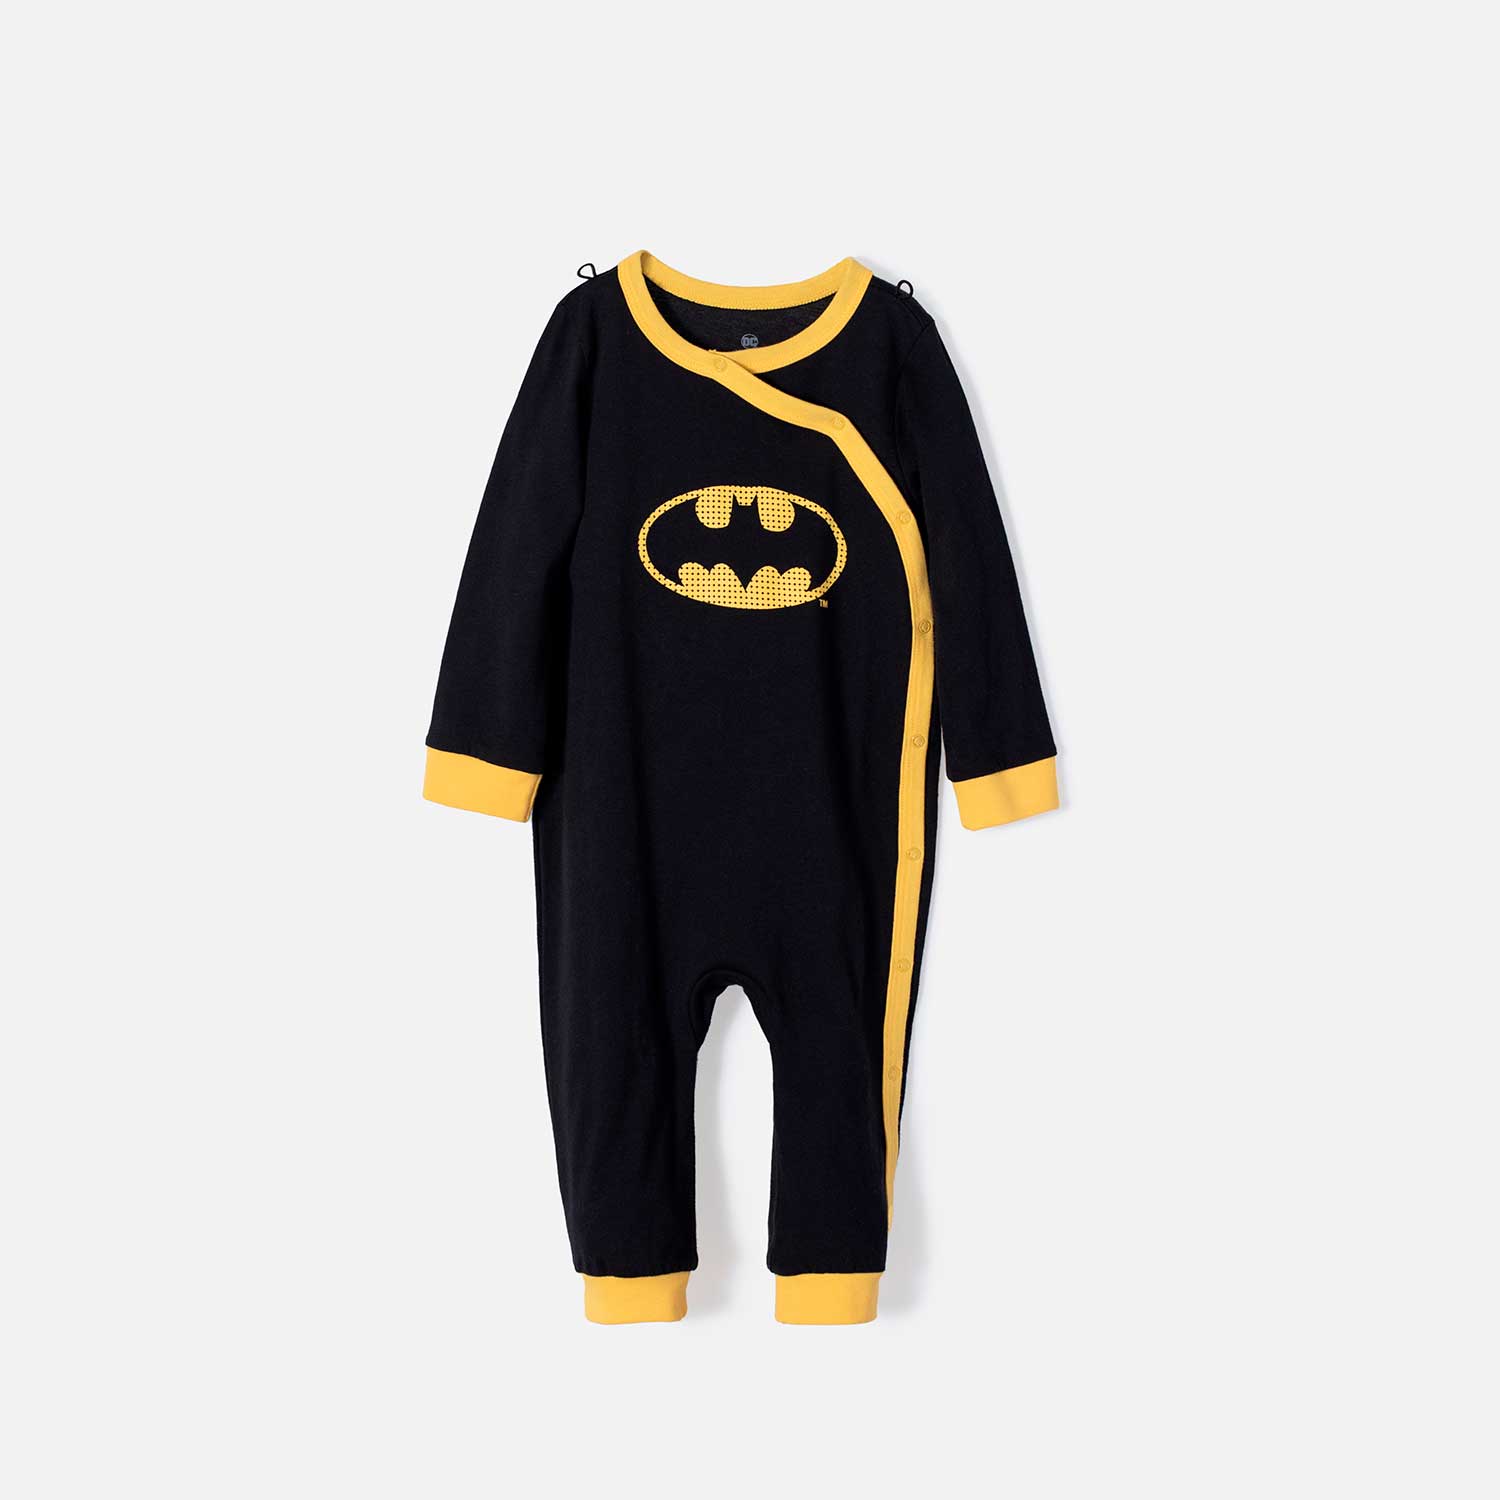 Pijama de Batman negra y amarilla tipo mameluco para bebé - Tienda